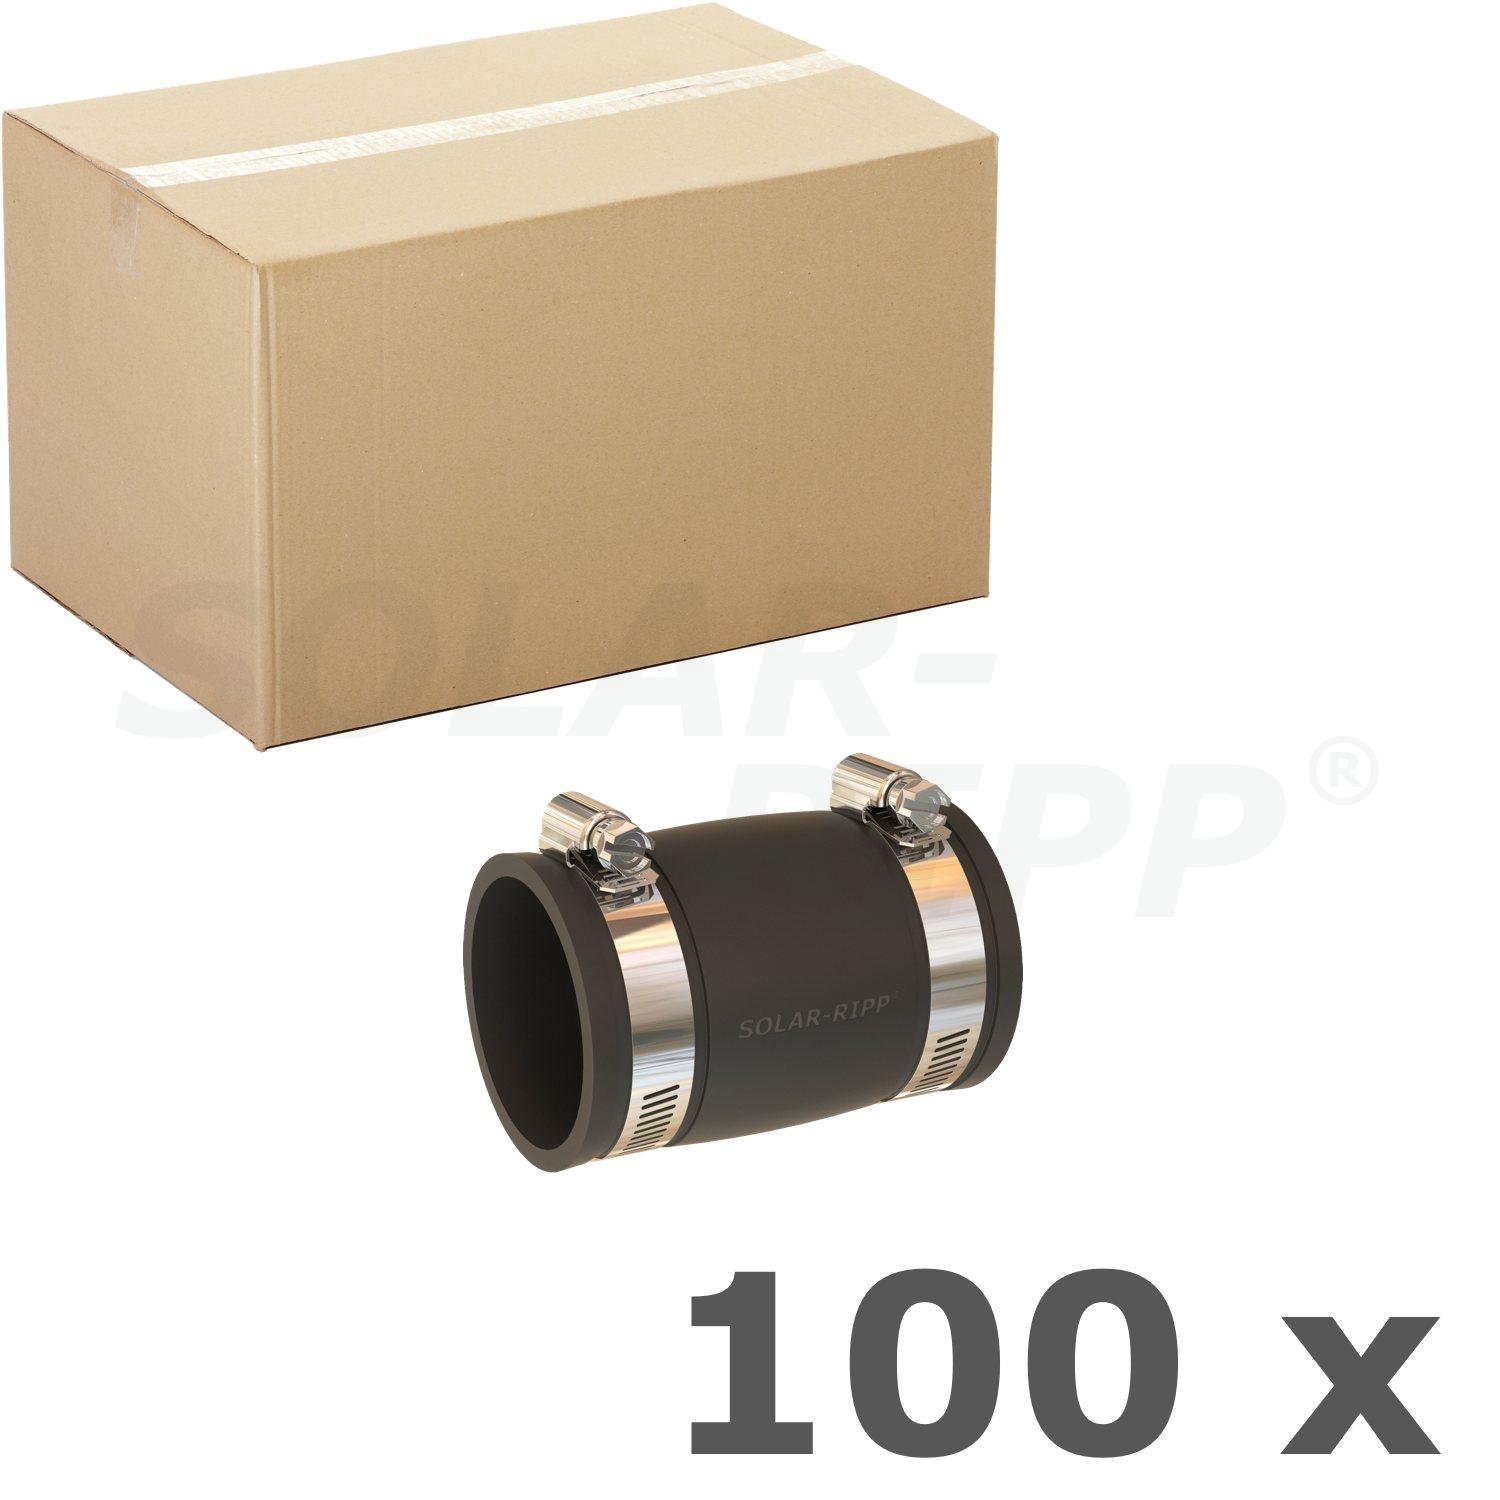 Manga de conexão 50mm - caixa com 100 unid.